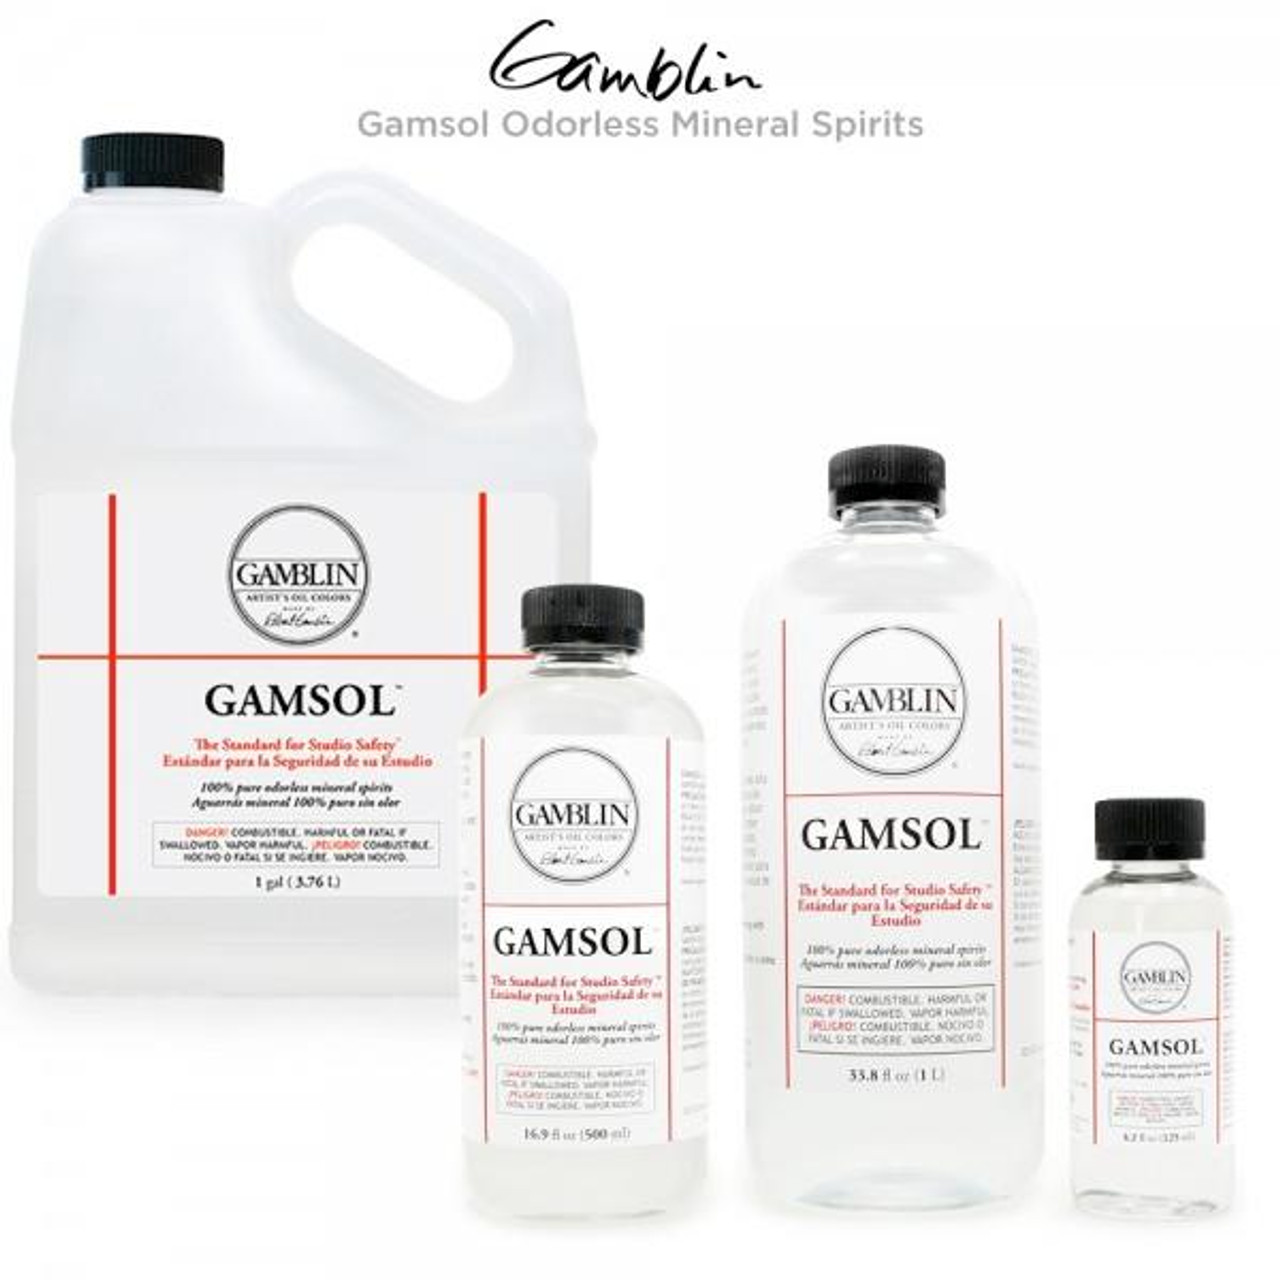 Gamblin - Gamsol - 16 oz.